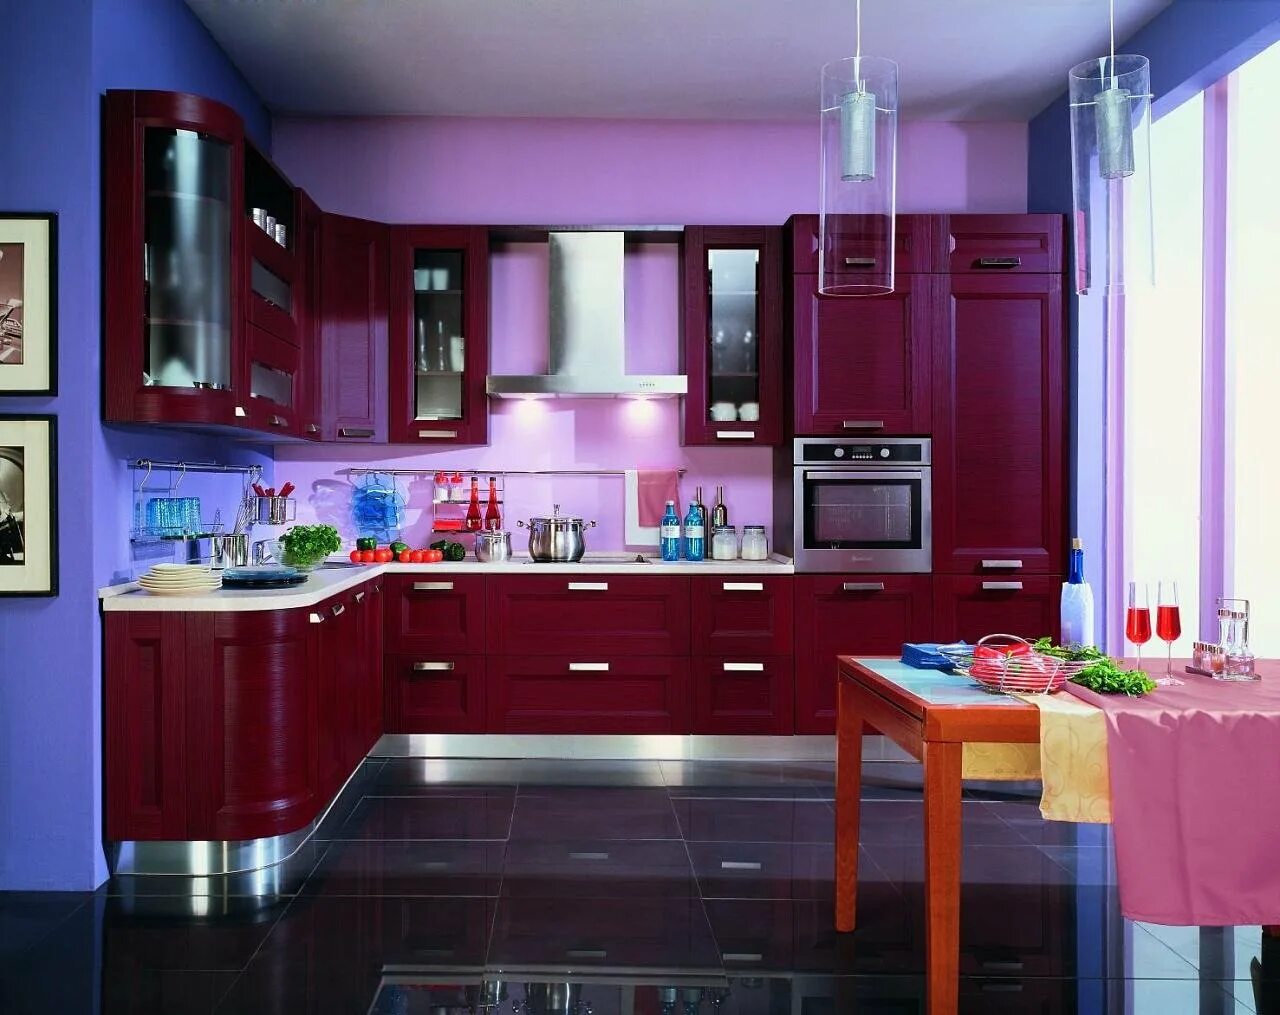 Кухни где выбрать. Красивые кухни. Красивые цвета кухни. Кухонный гарнитур бордового цвета. Кухня вишневого цвета.